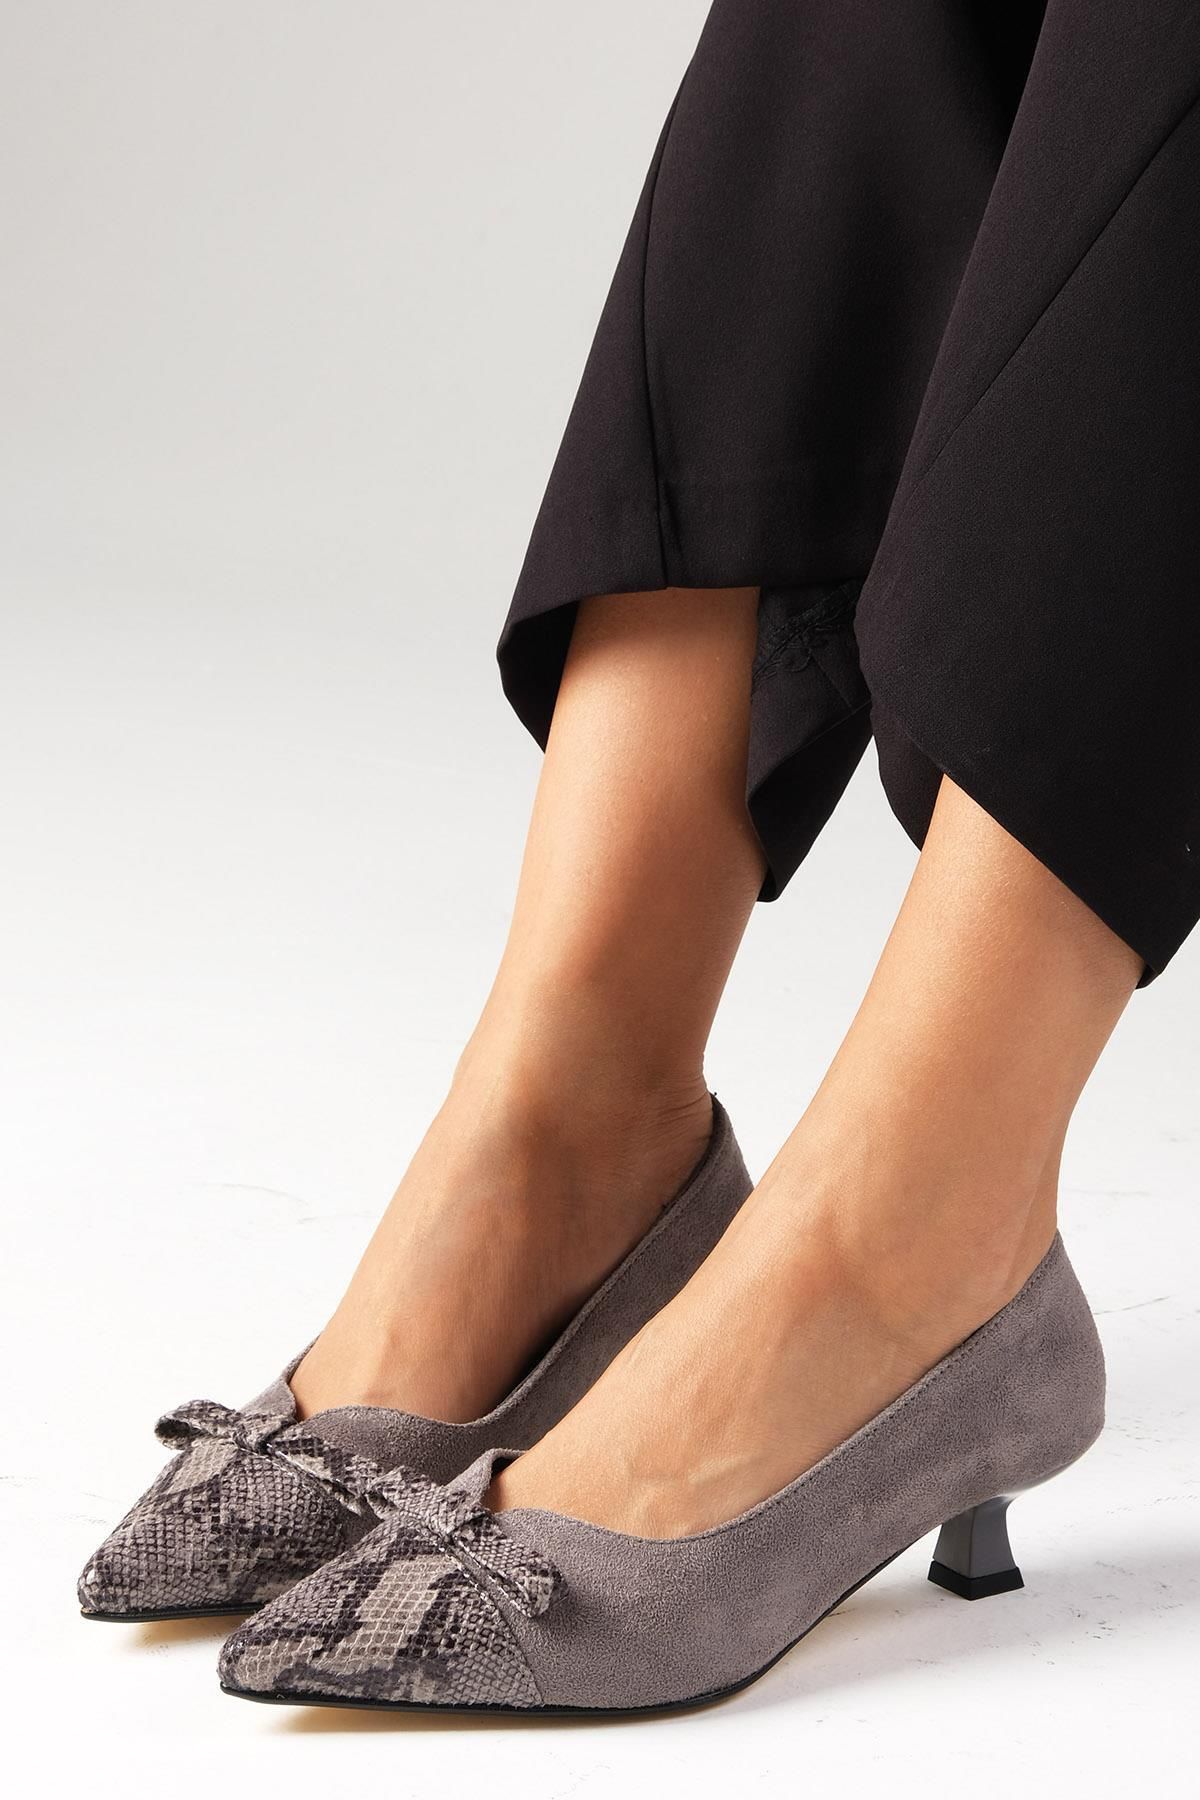 Mio Gusto Pia Gri Renk Yılan Derisi Ve Süet Kombinasyonlu Kadın Kısa Topuklu Ayakkabı